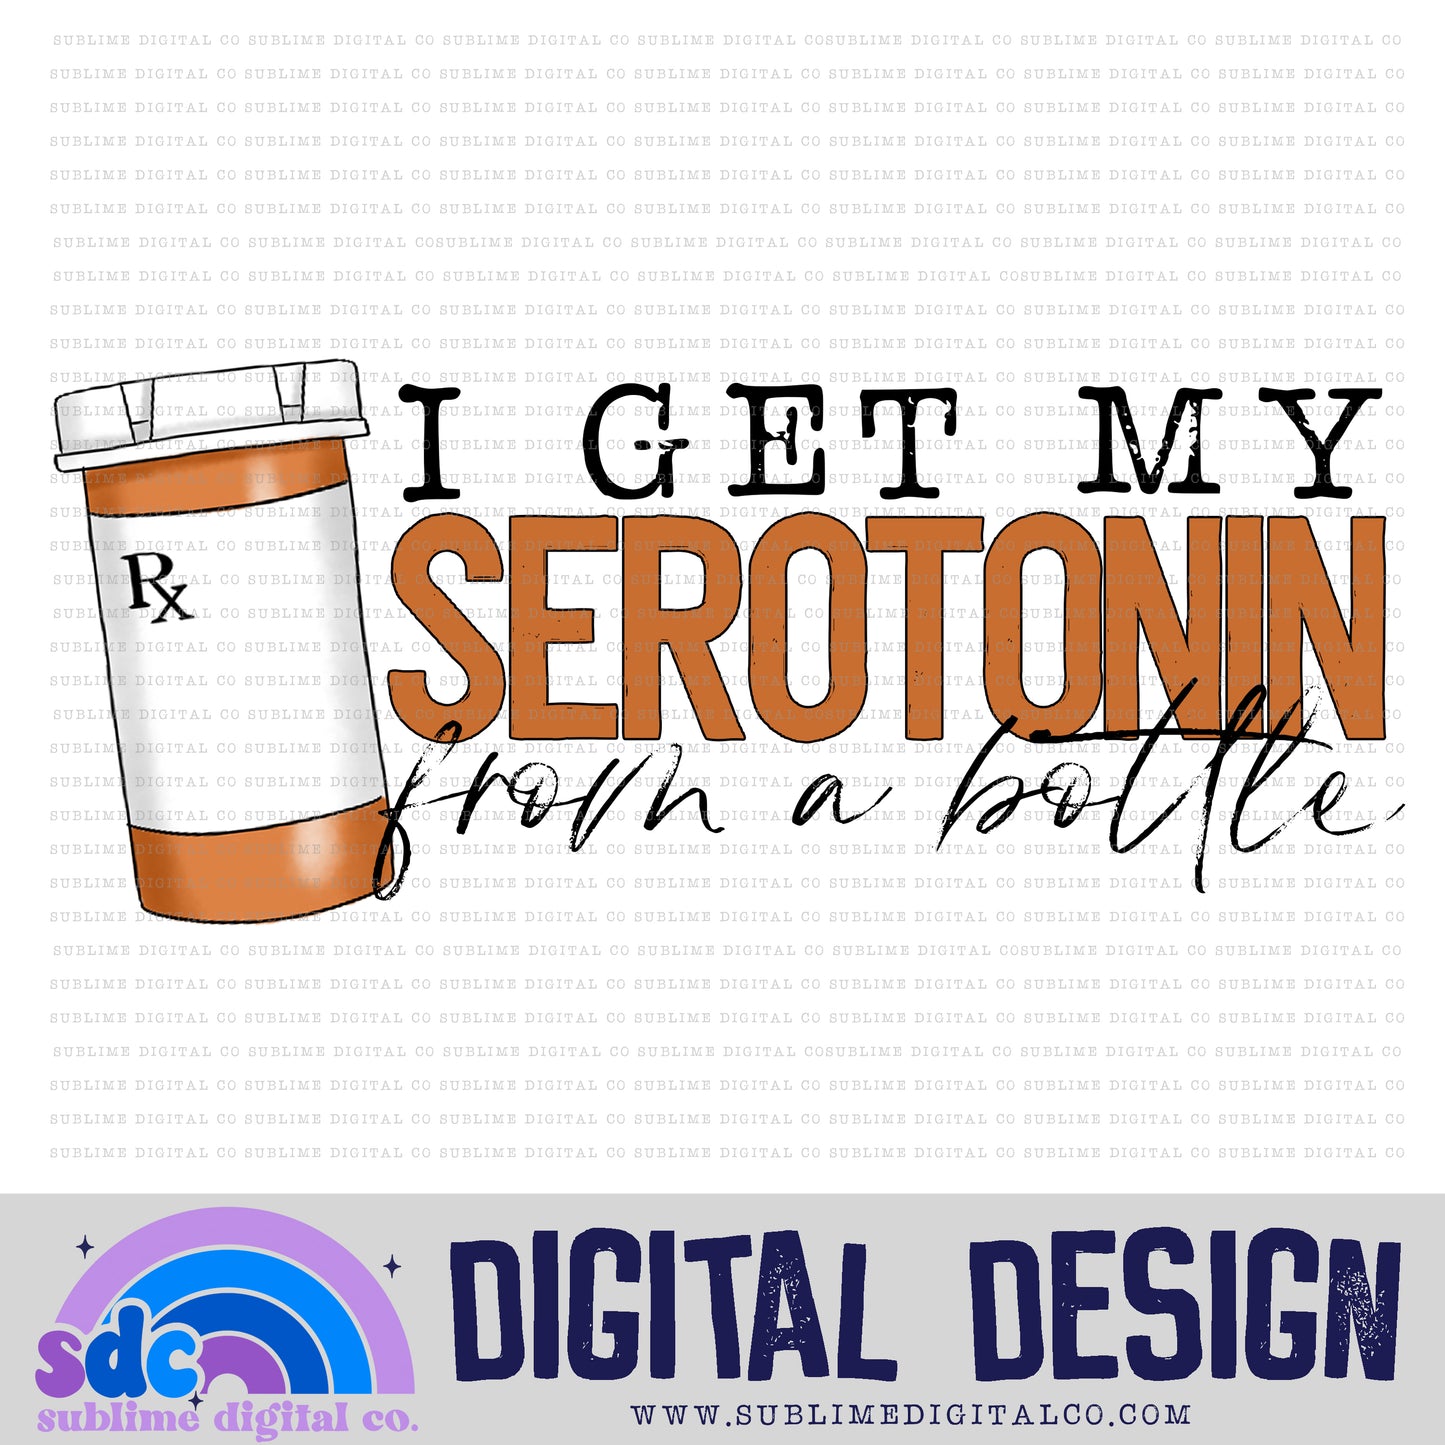 Mental Health 2 • Digital Design Bundles • Instant Download • Sublimation Design